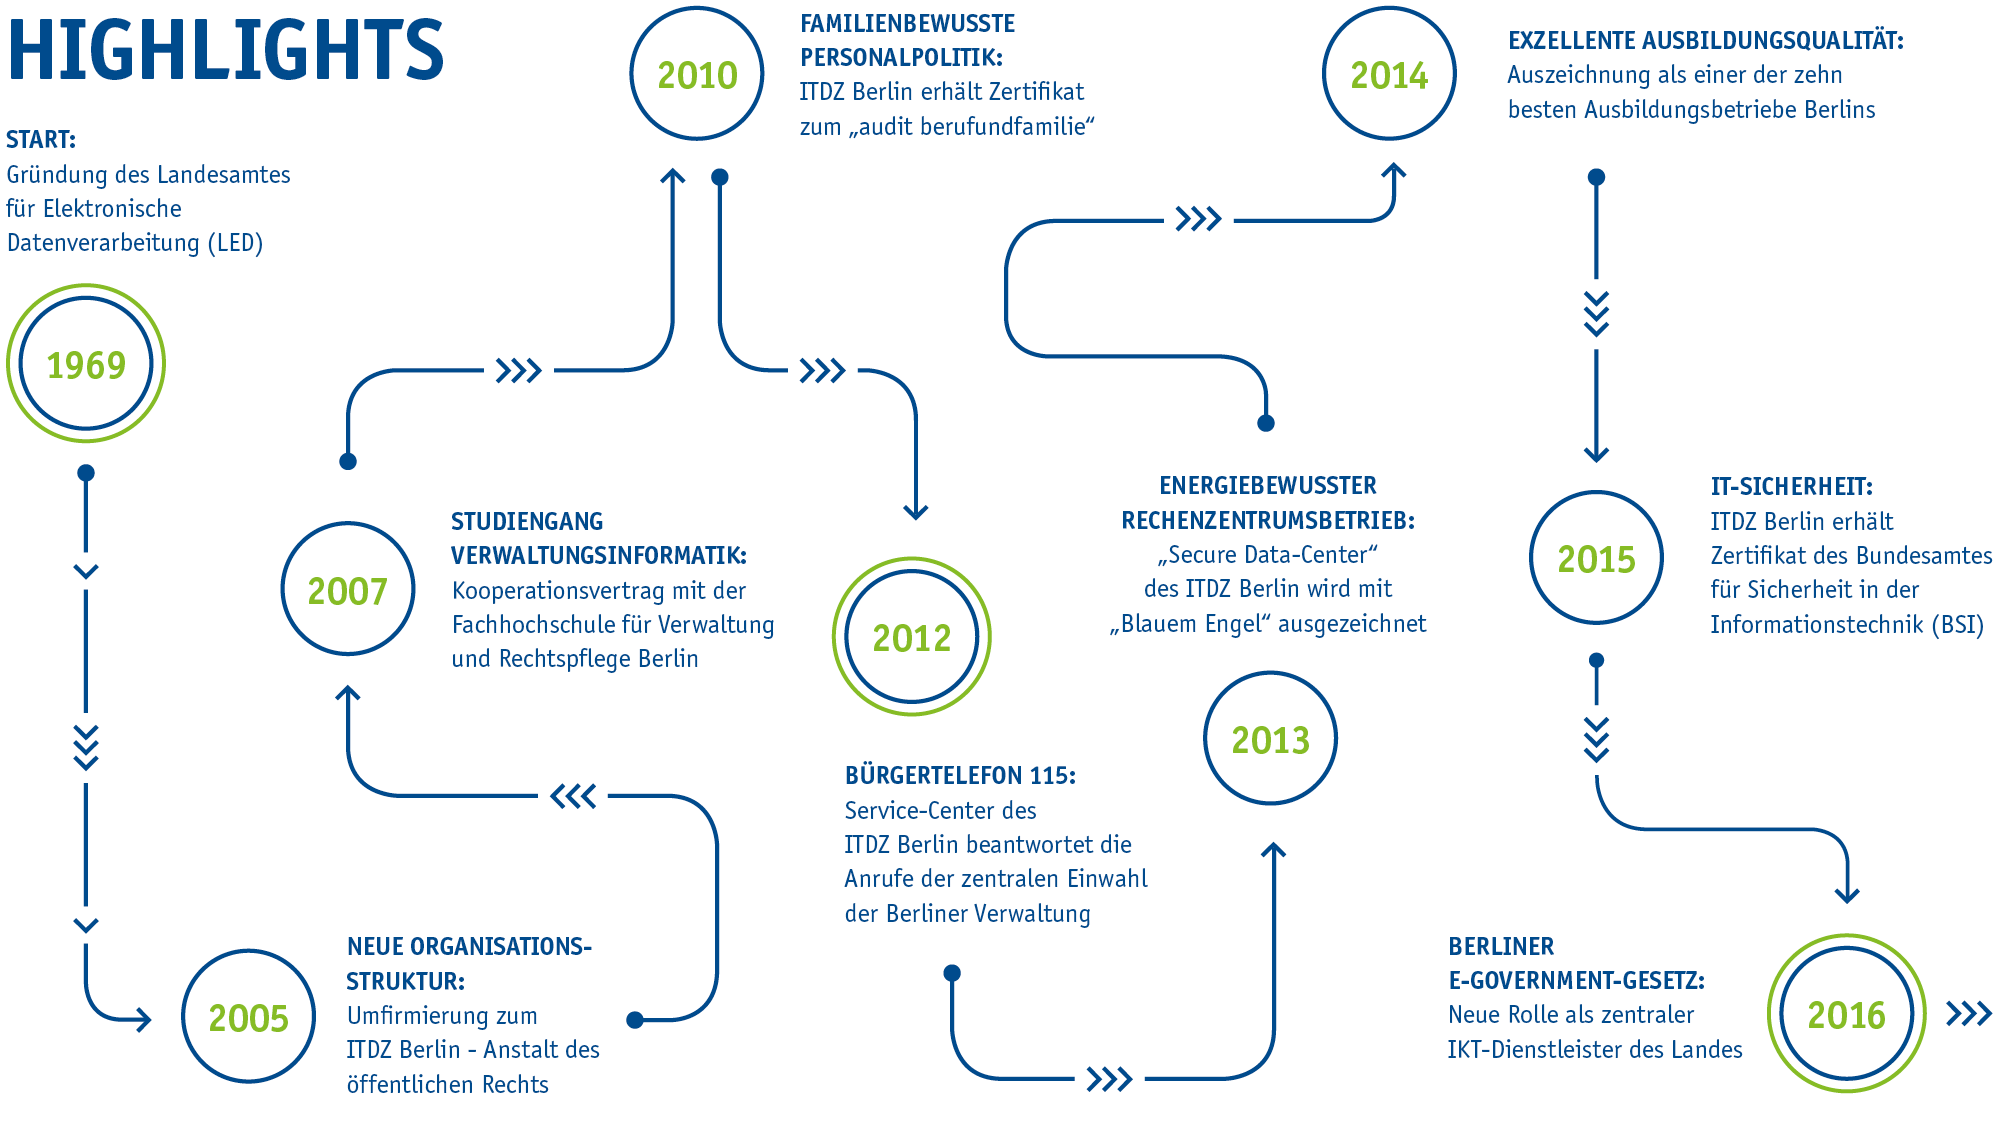 Abgebildet Highlights der Firmengeschichte mit Jahreszahlen (1969 - 2016) in kreisen zu denen Pfeile führen.